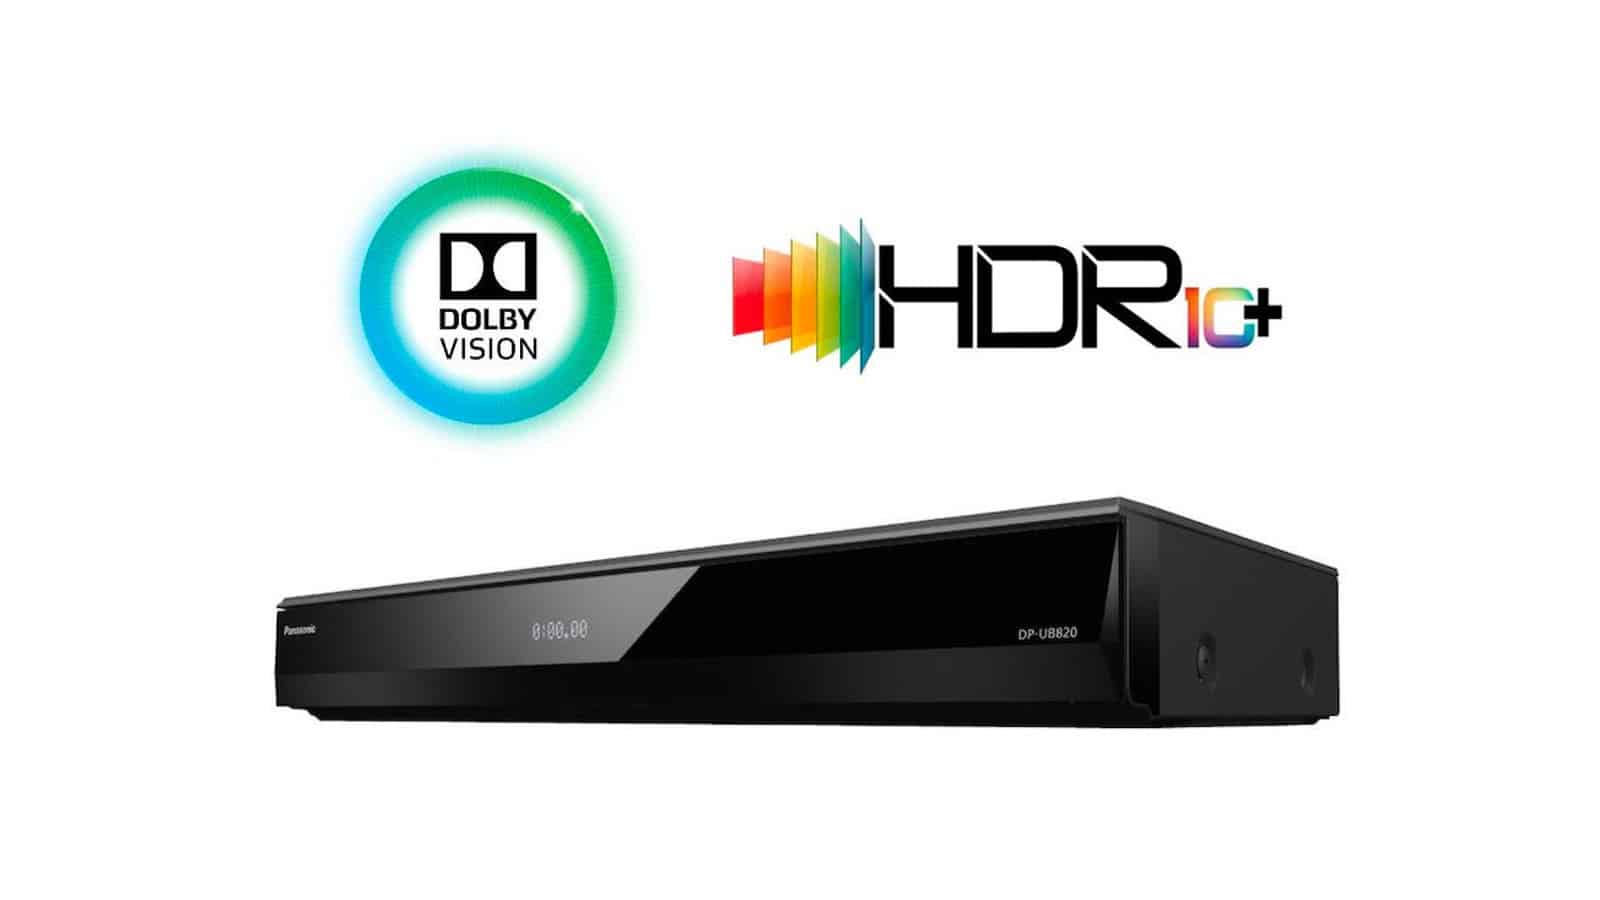 Panasonic DP-UB420 HDR 4K UHD Network Blu-ray Player DP-UB420-K